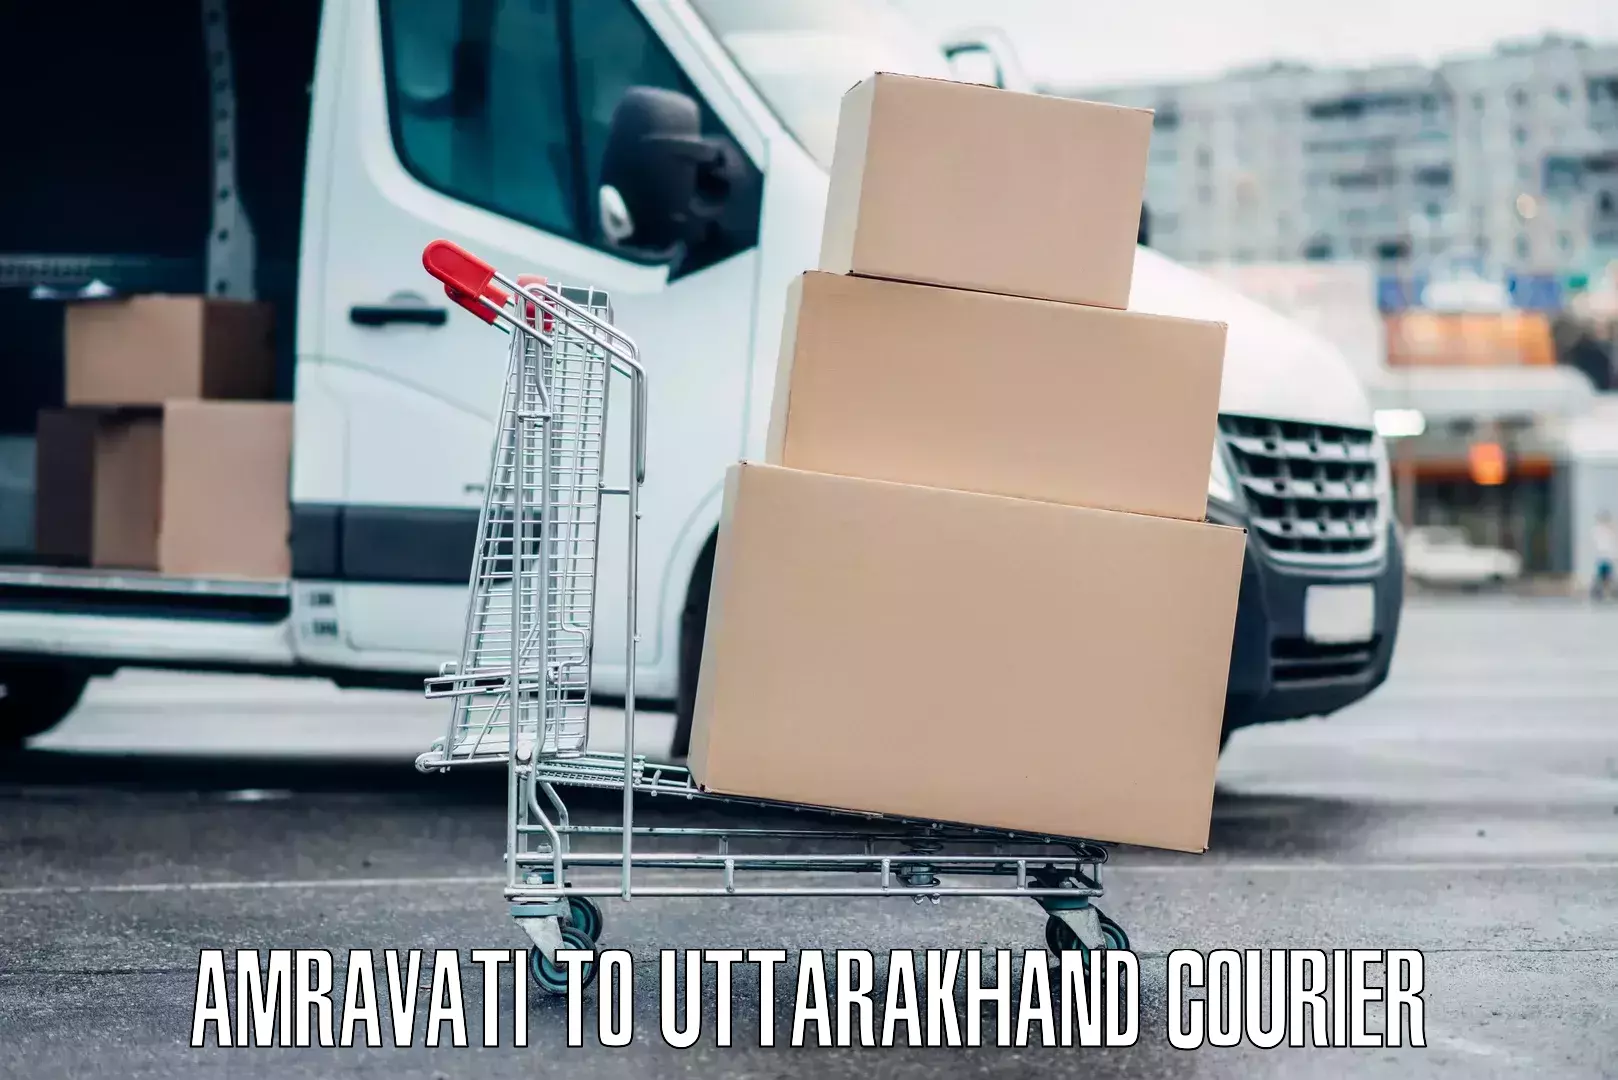 Overnight luggage courier Amravati to Uttarakhand